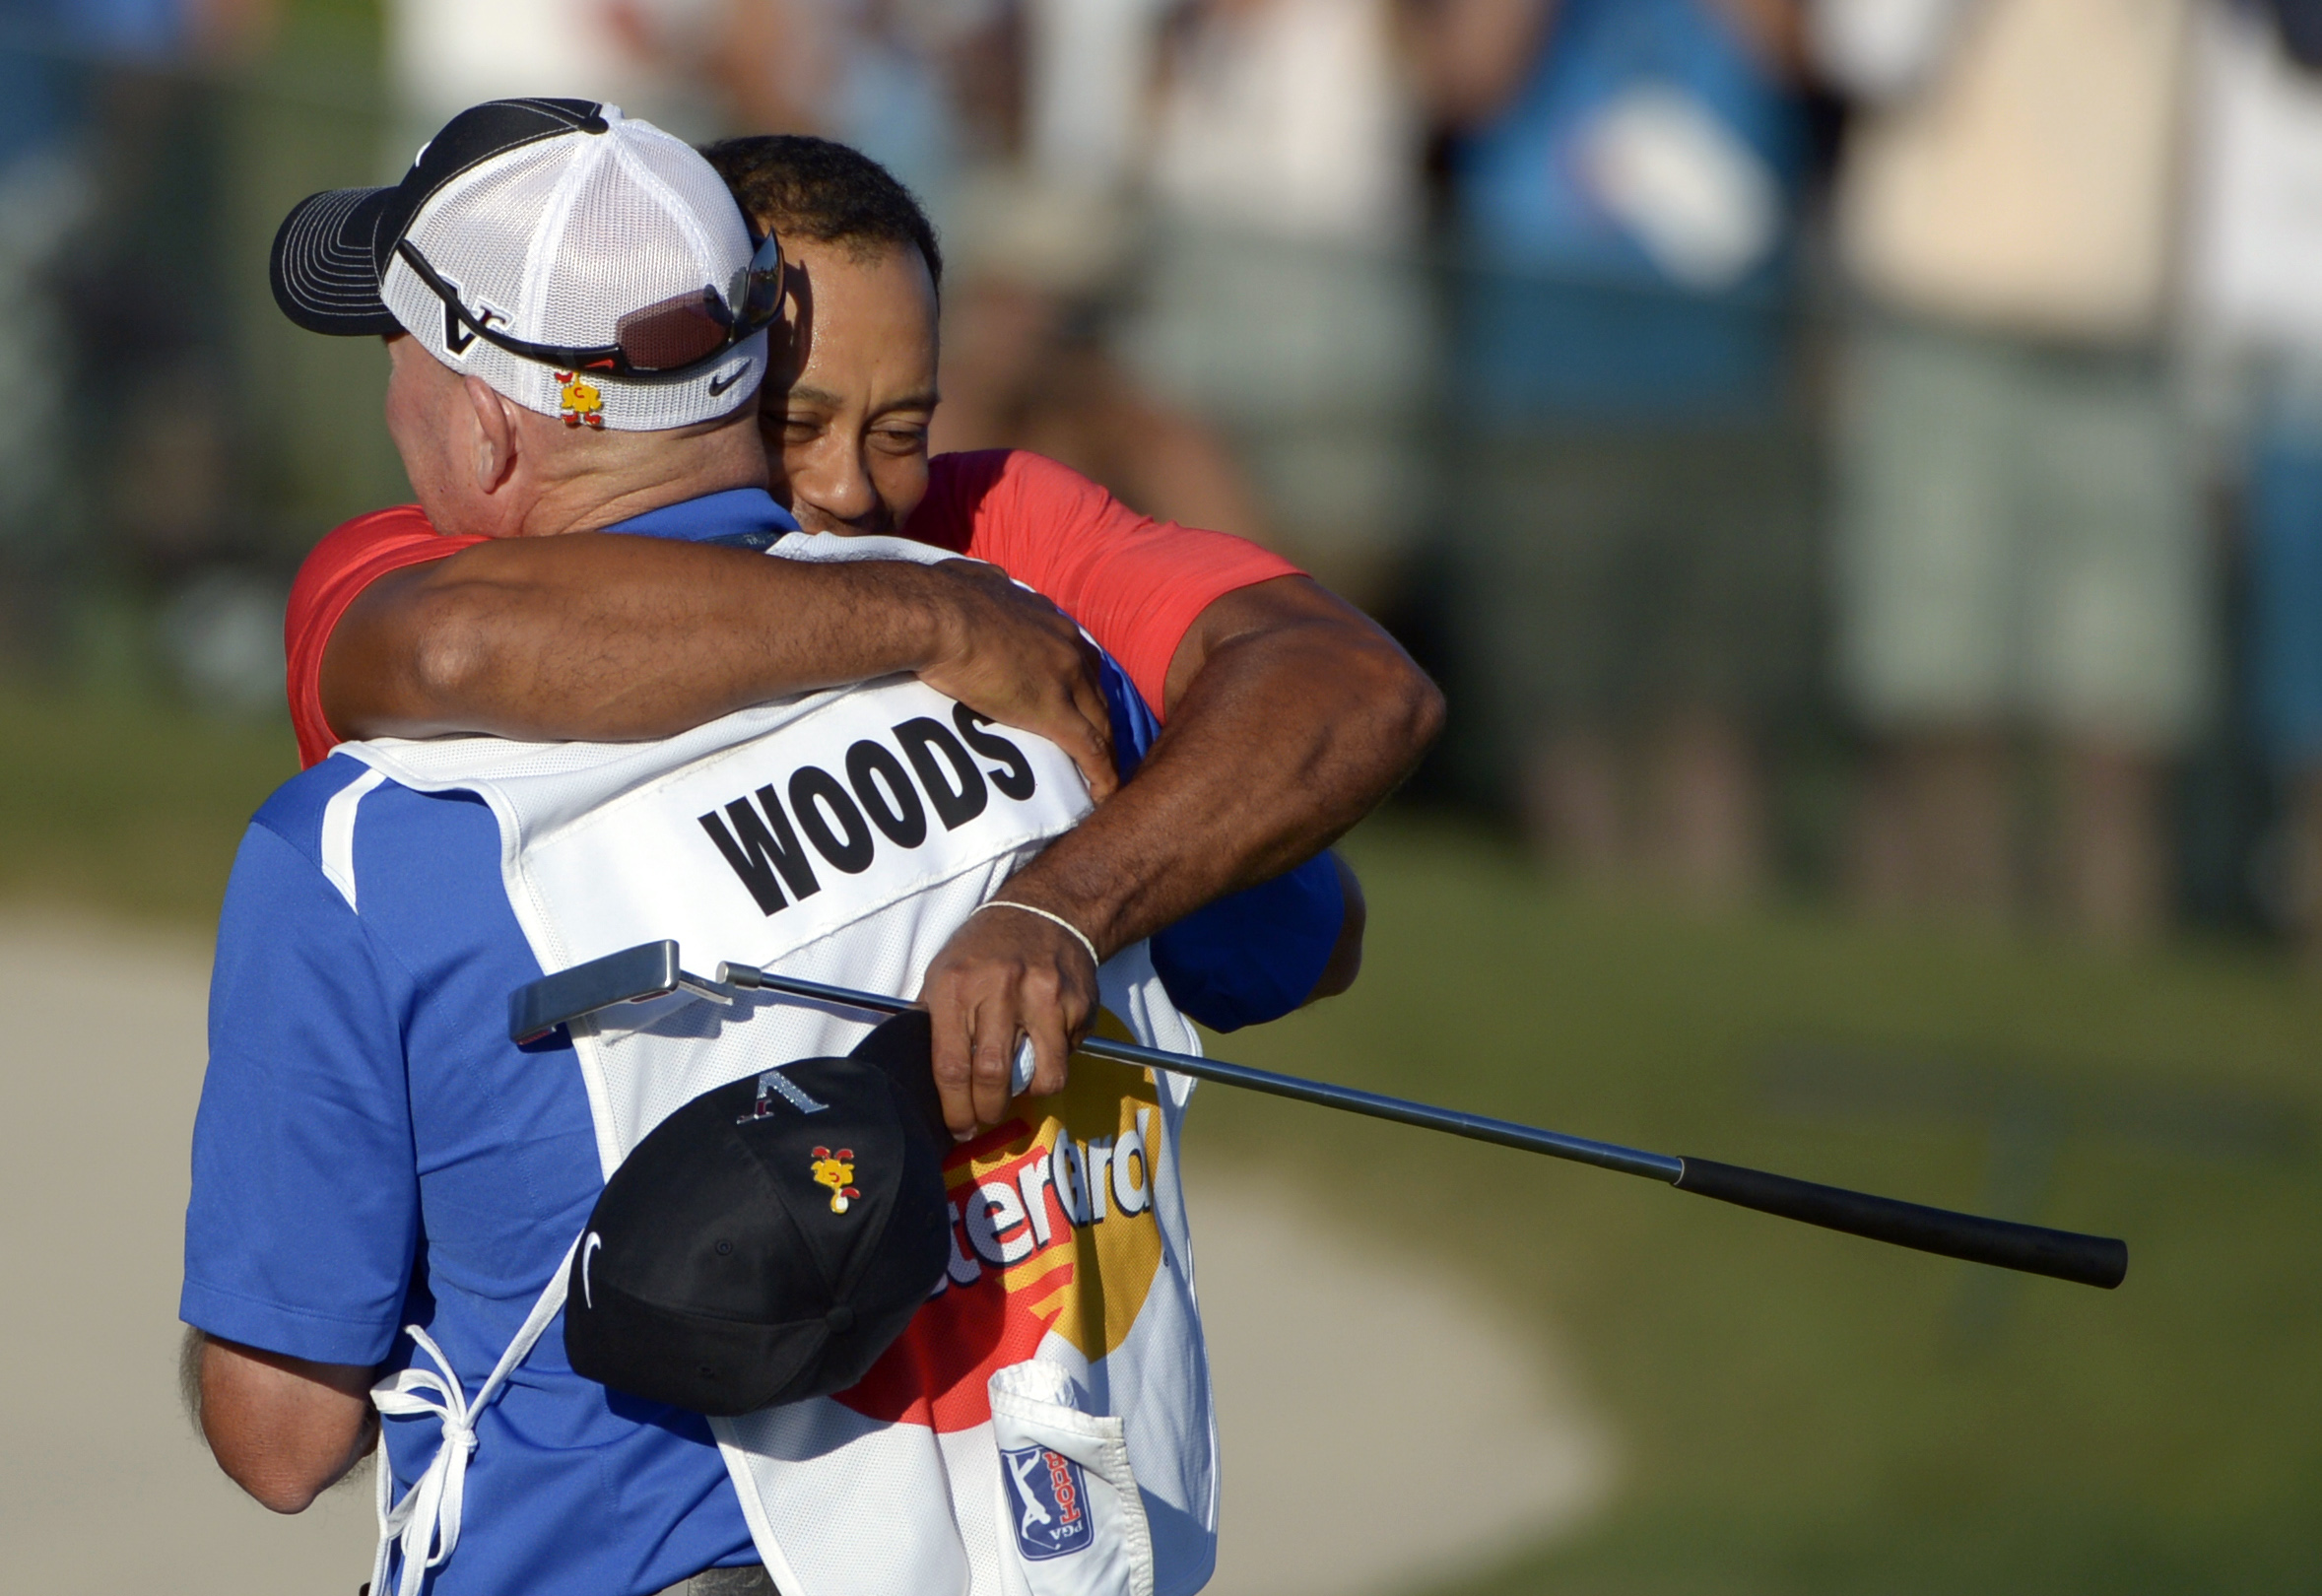 Woods kramar om sin caddie Joe LaCava som även han var mycket nöjd efter segern i Bay Hill: "Han var en man på ett uppdrag i dag."